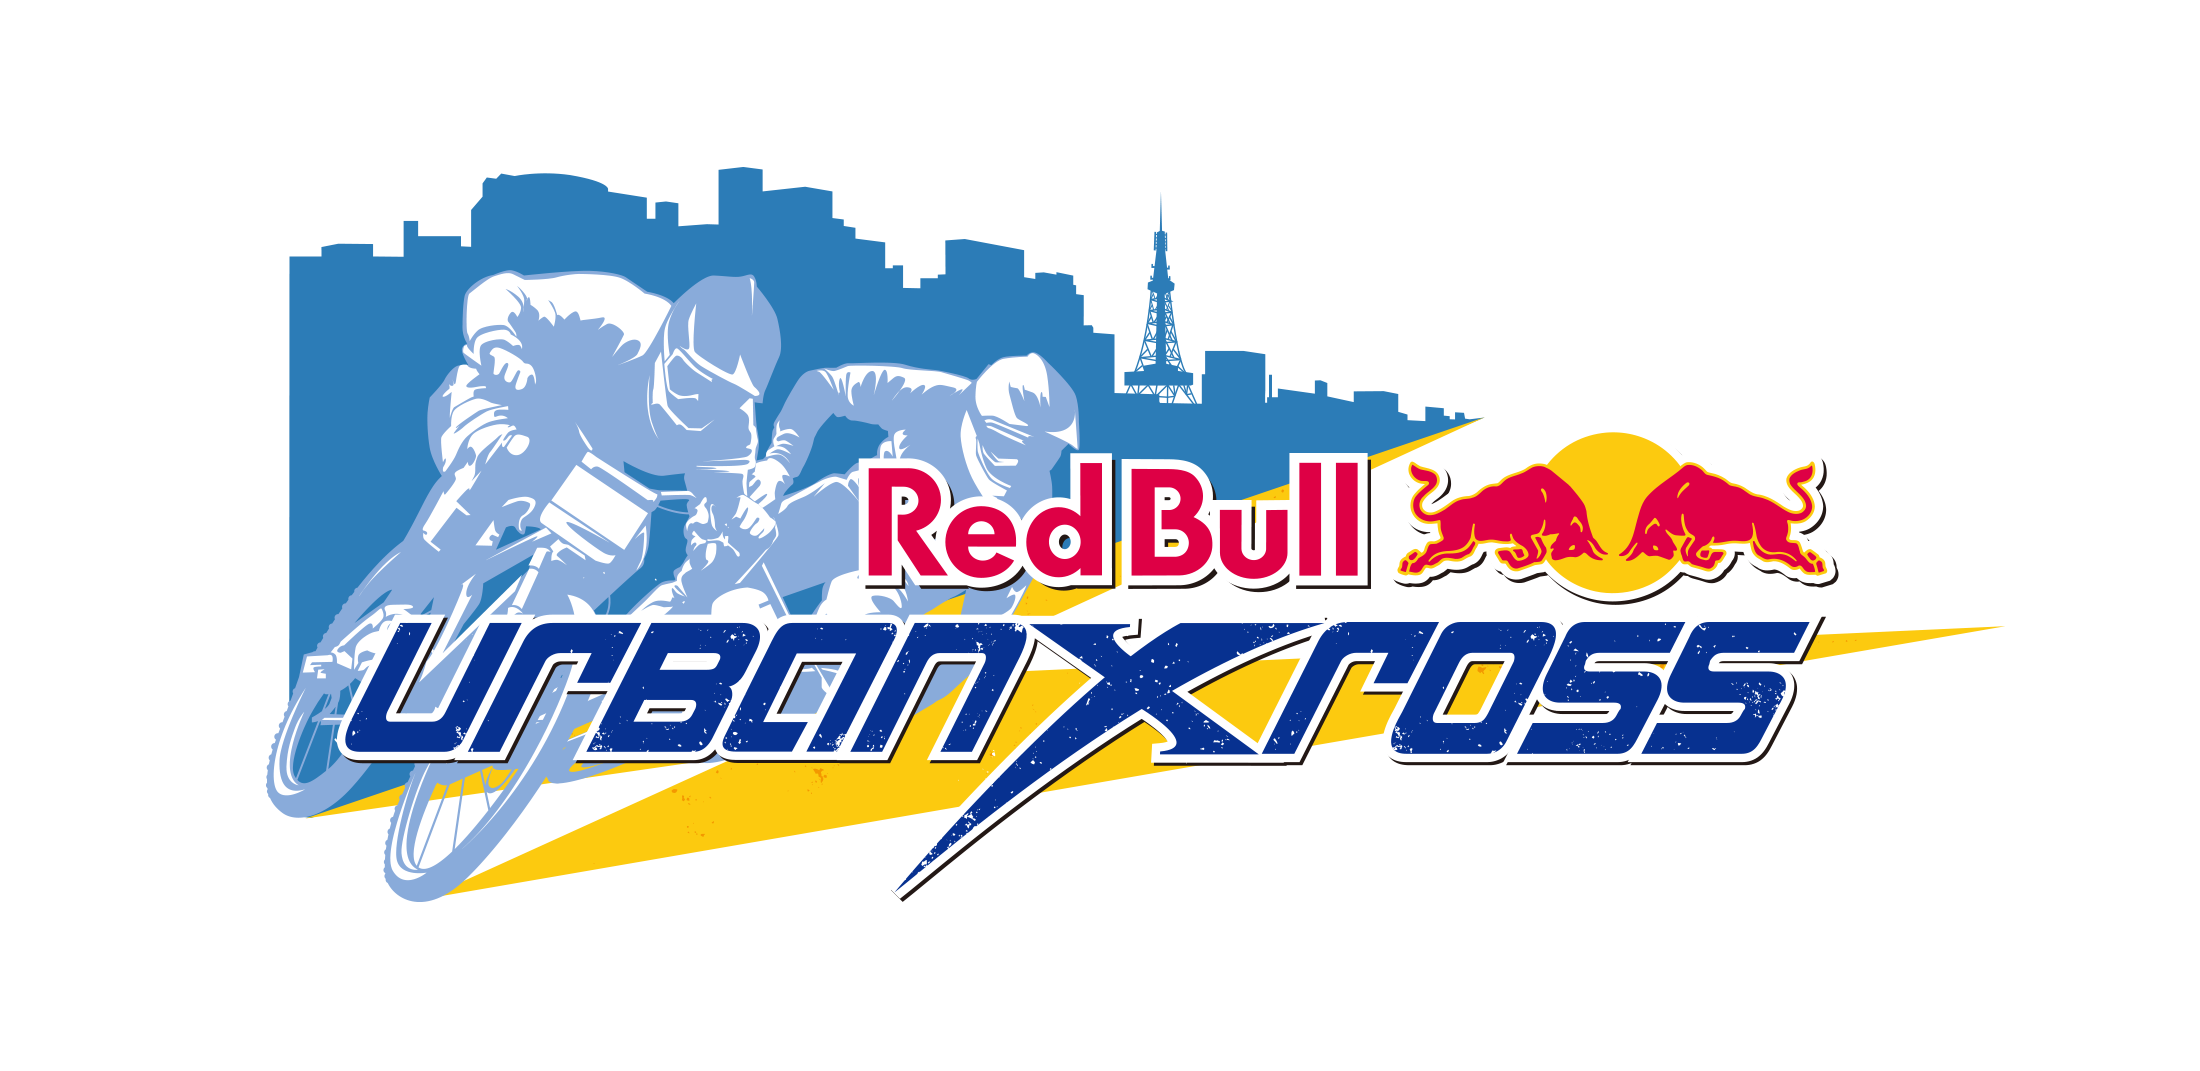 Red Bull Urban Xross Logo Uzura Inc